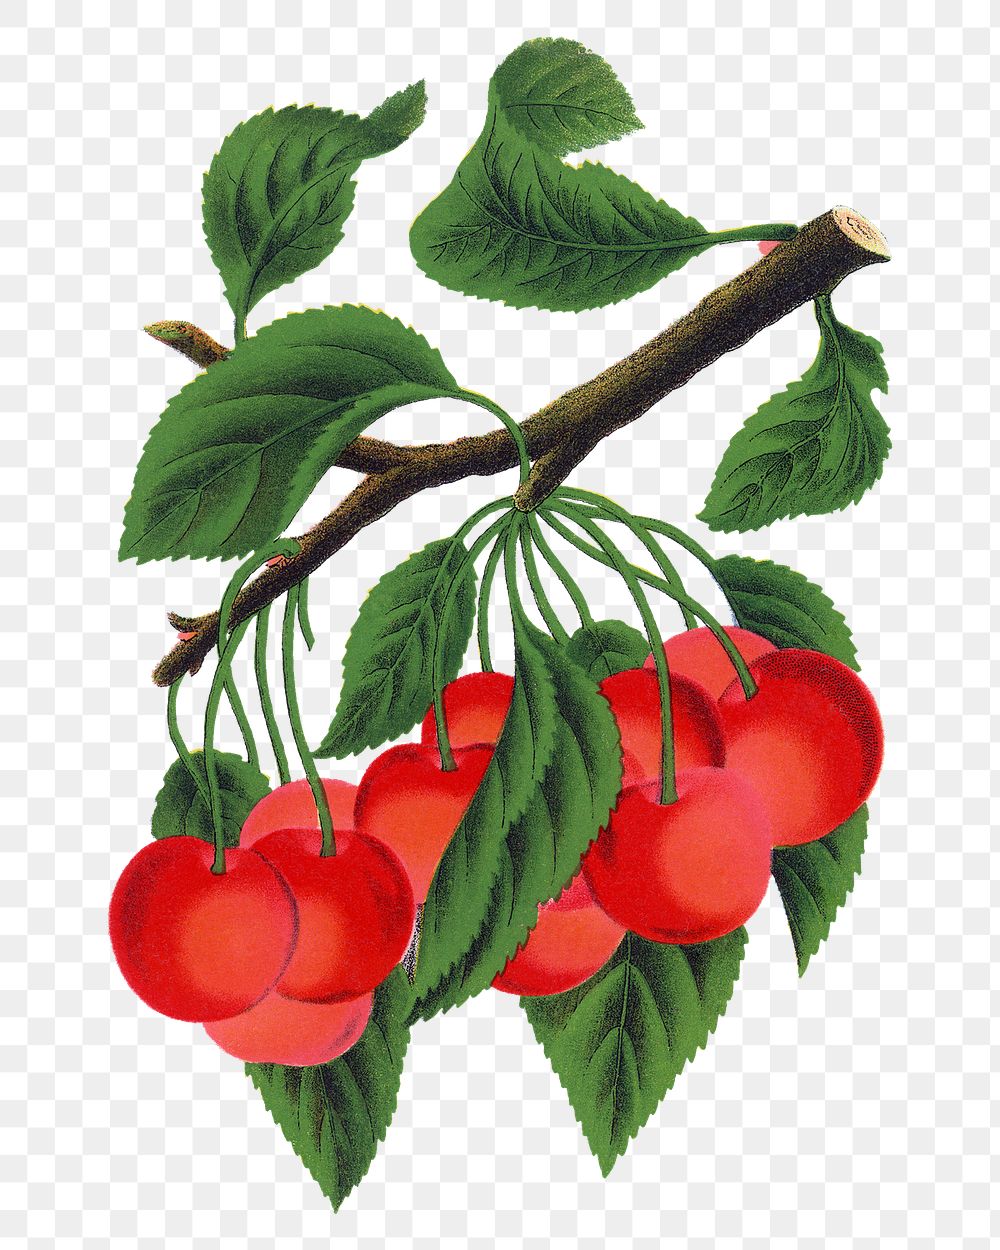 Cherry png sticker, vintage fruit illustration, transparent background